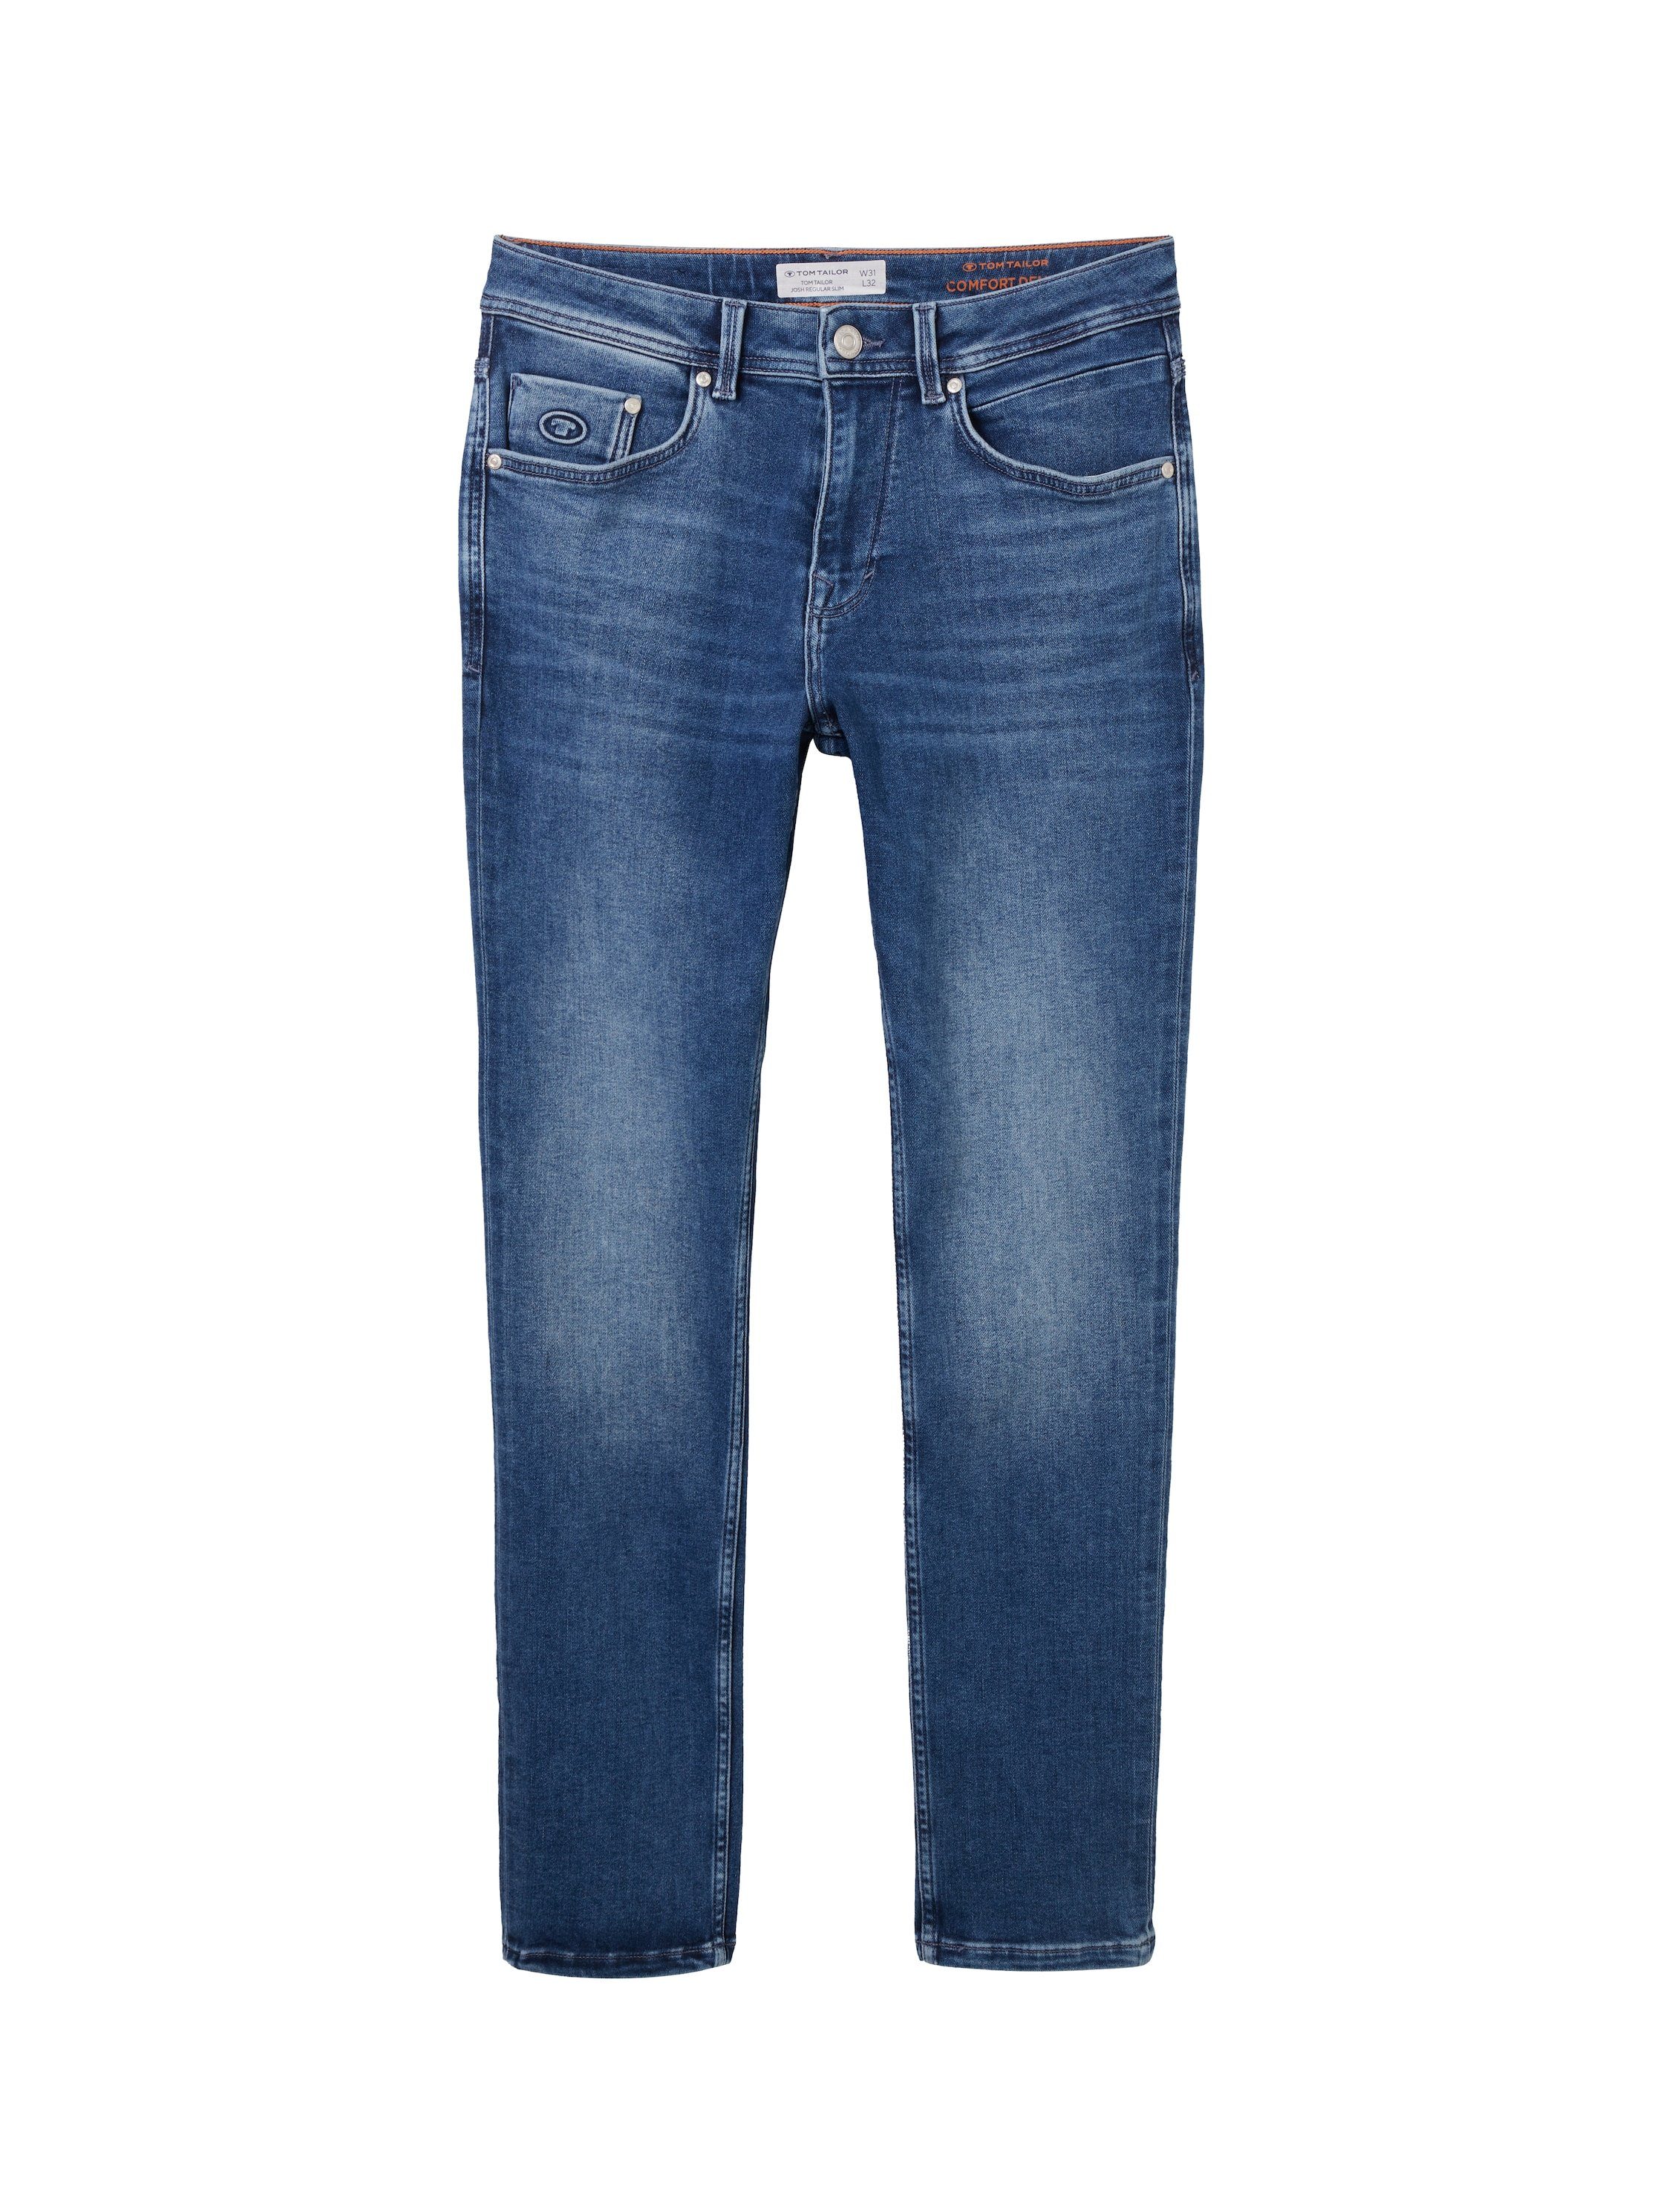 Tom Tailor 5-pocket jeans 5-pocket stijl